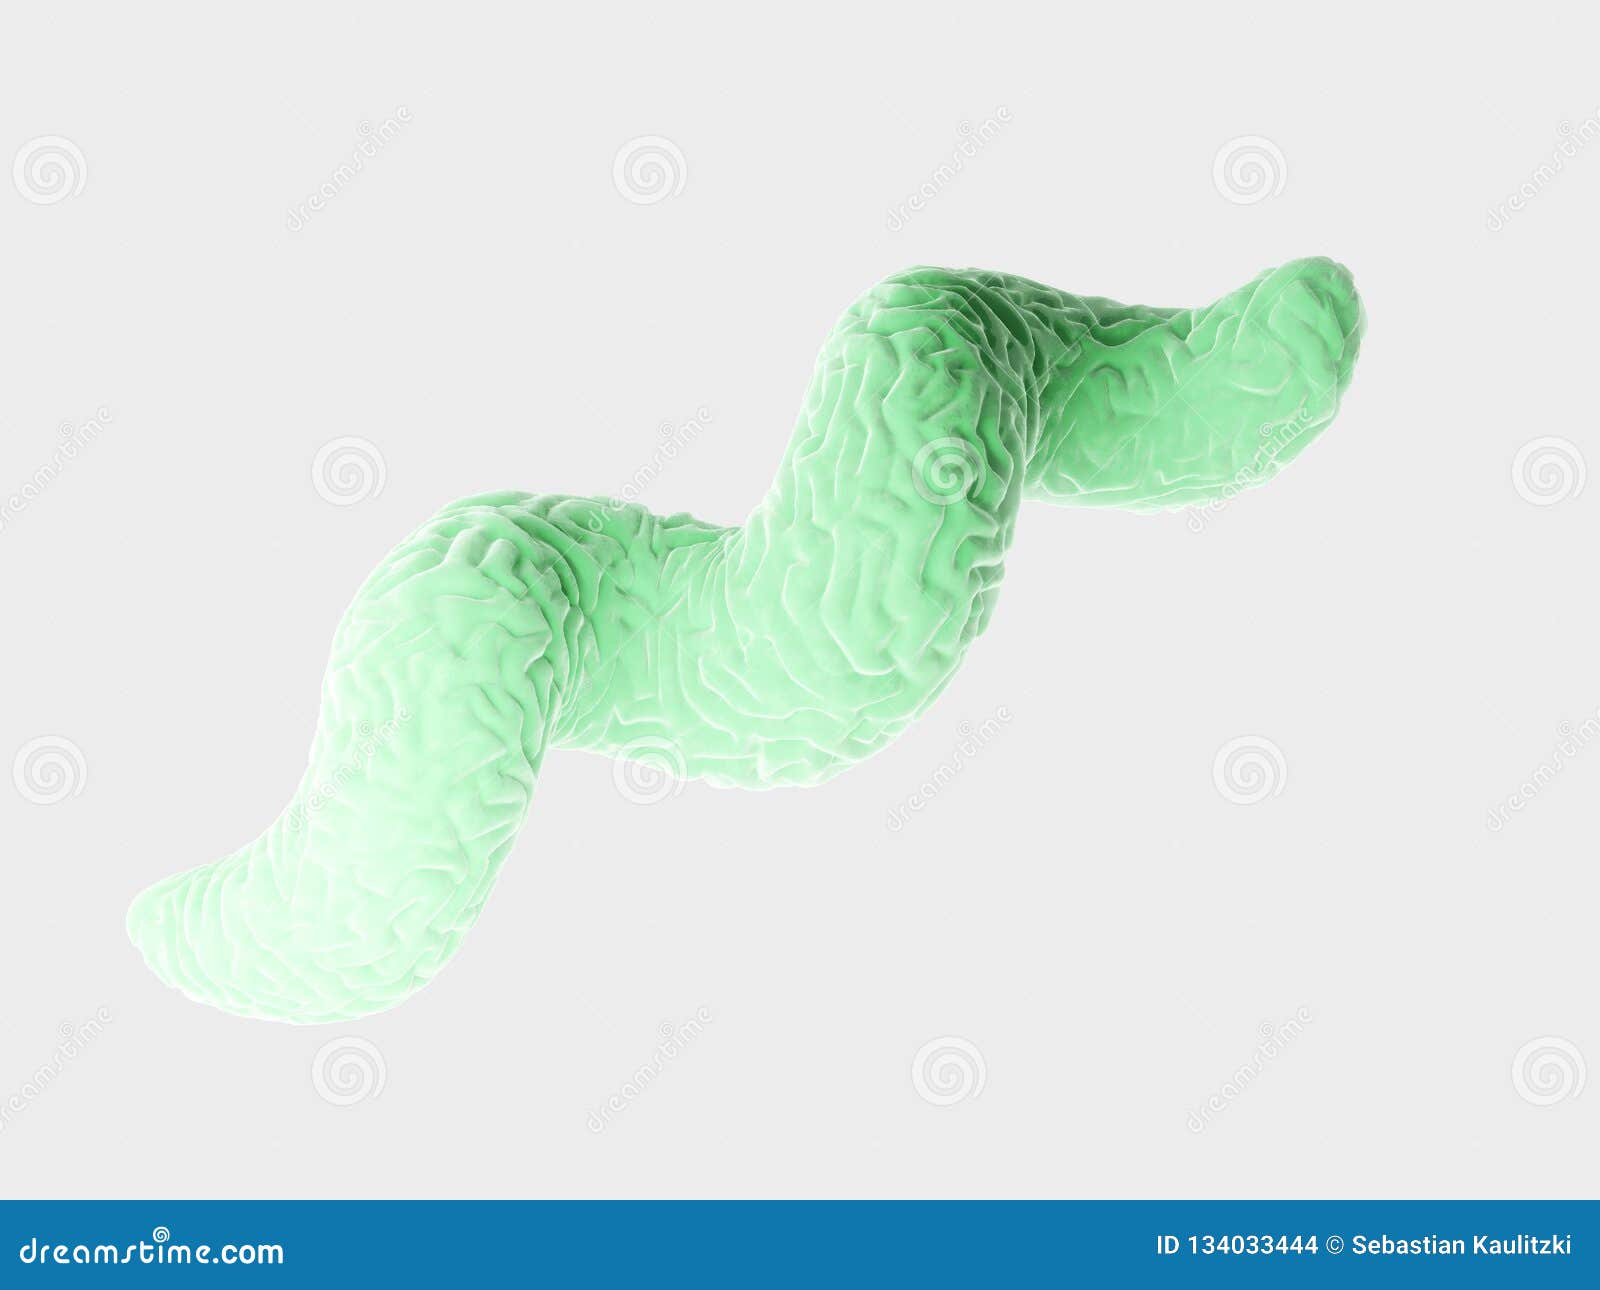 a campylobacter bacteria